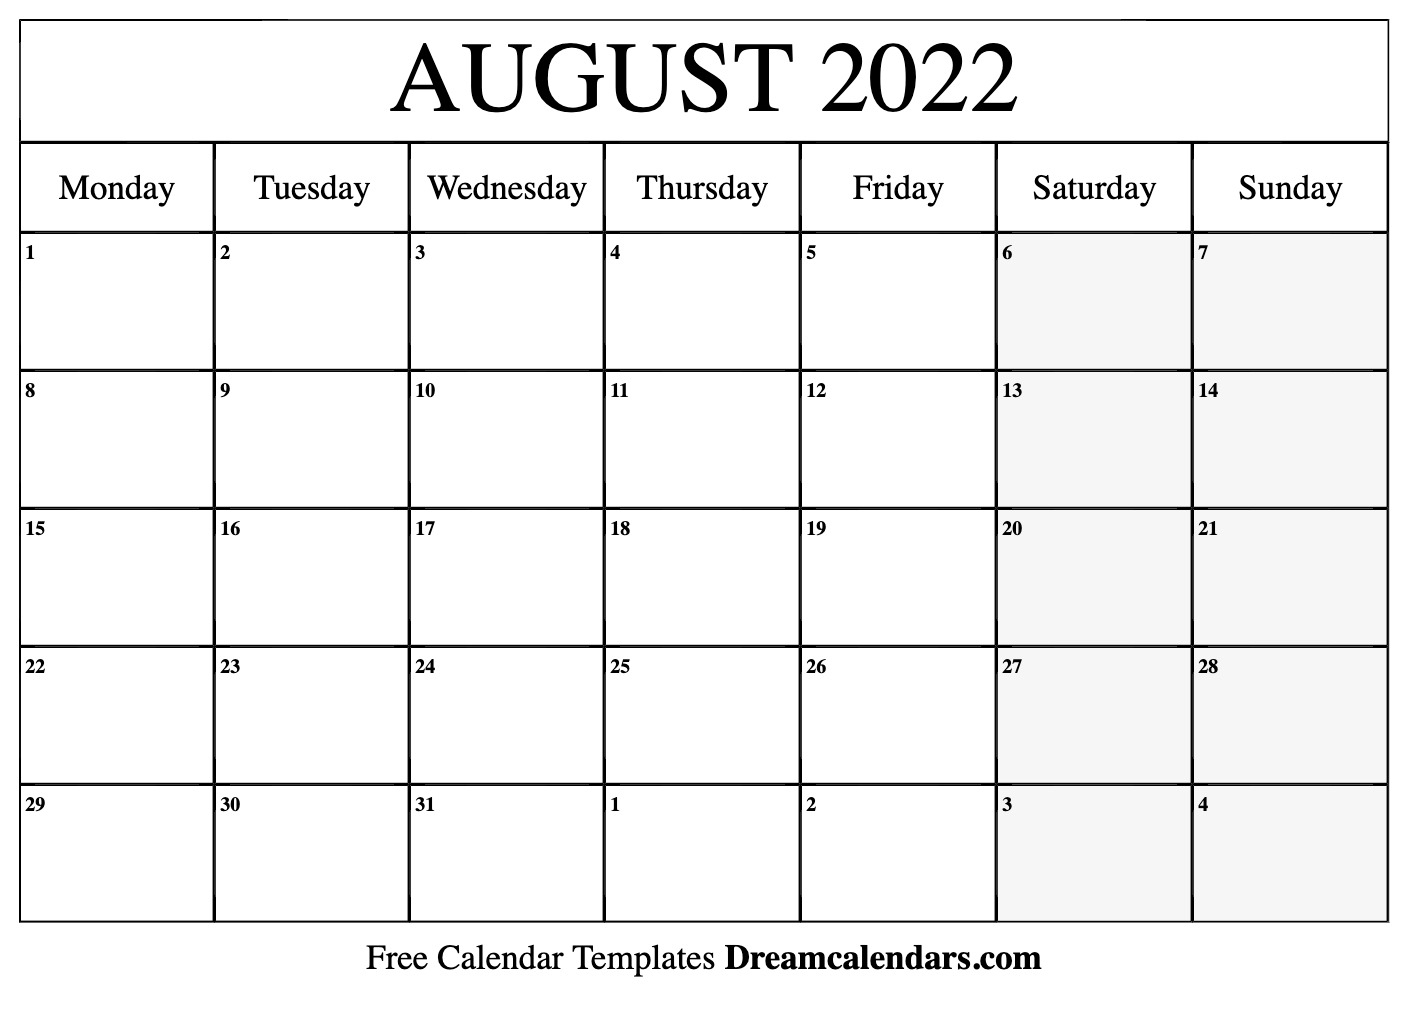 Catch Moon Calendar August 2022